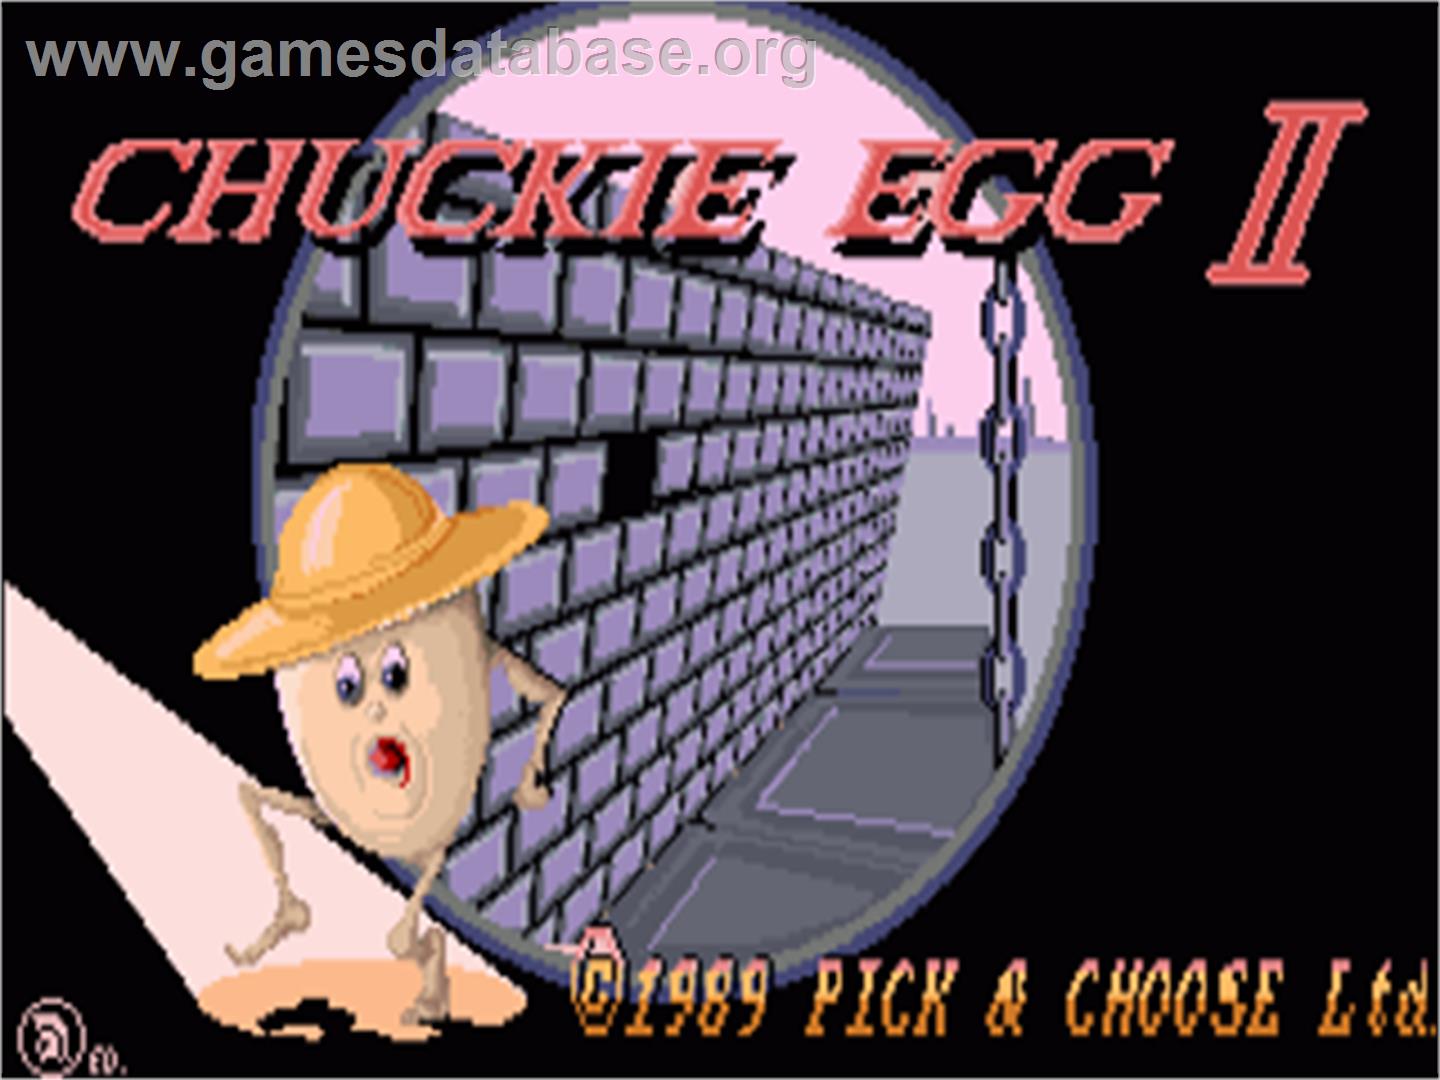 Chuckie Egg 2 - Commodore Amiga - Artwork - Title Screen